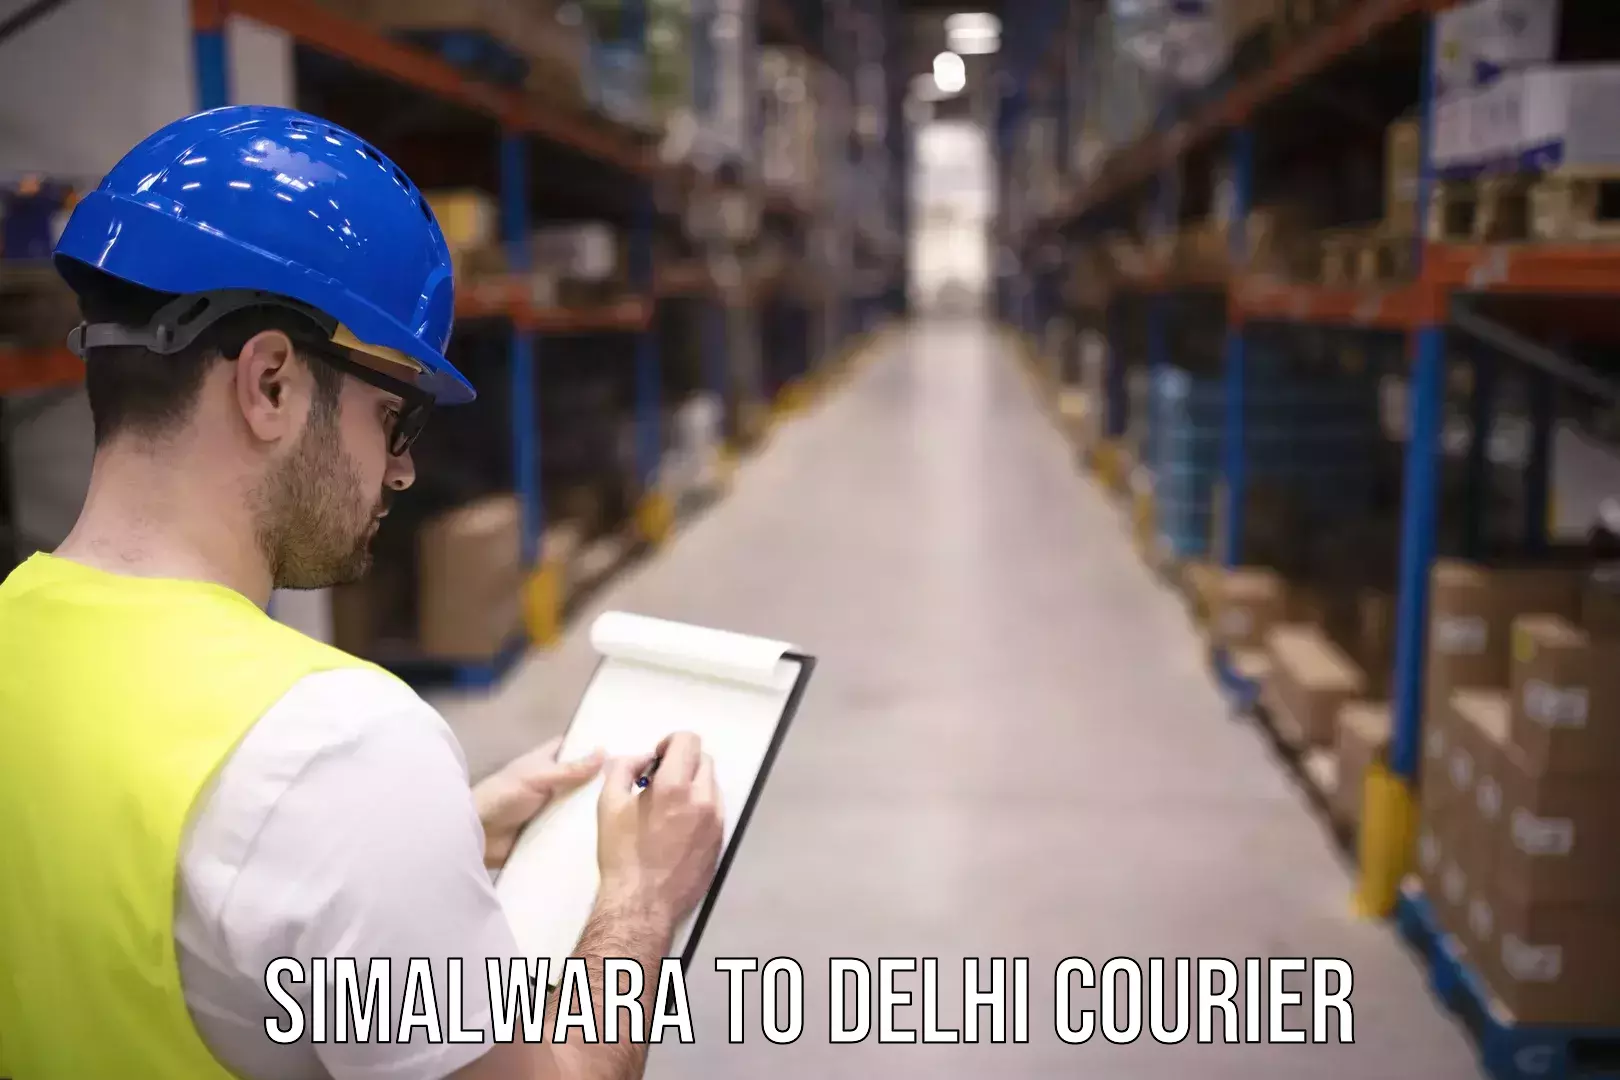 High-speed parcel service Simalwara to IIT Delhi